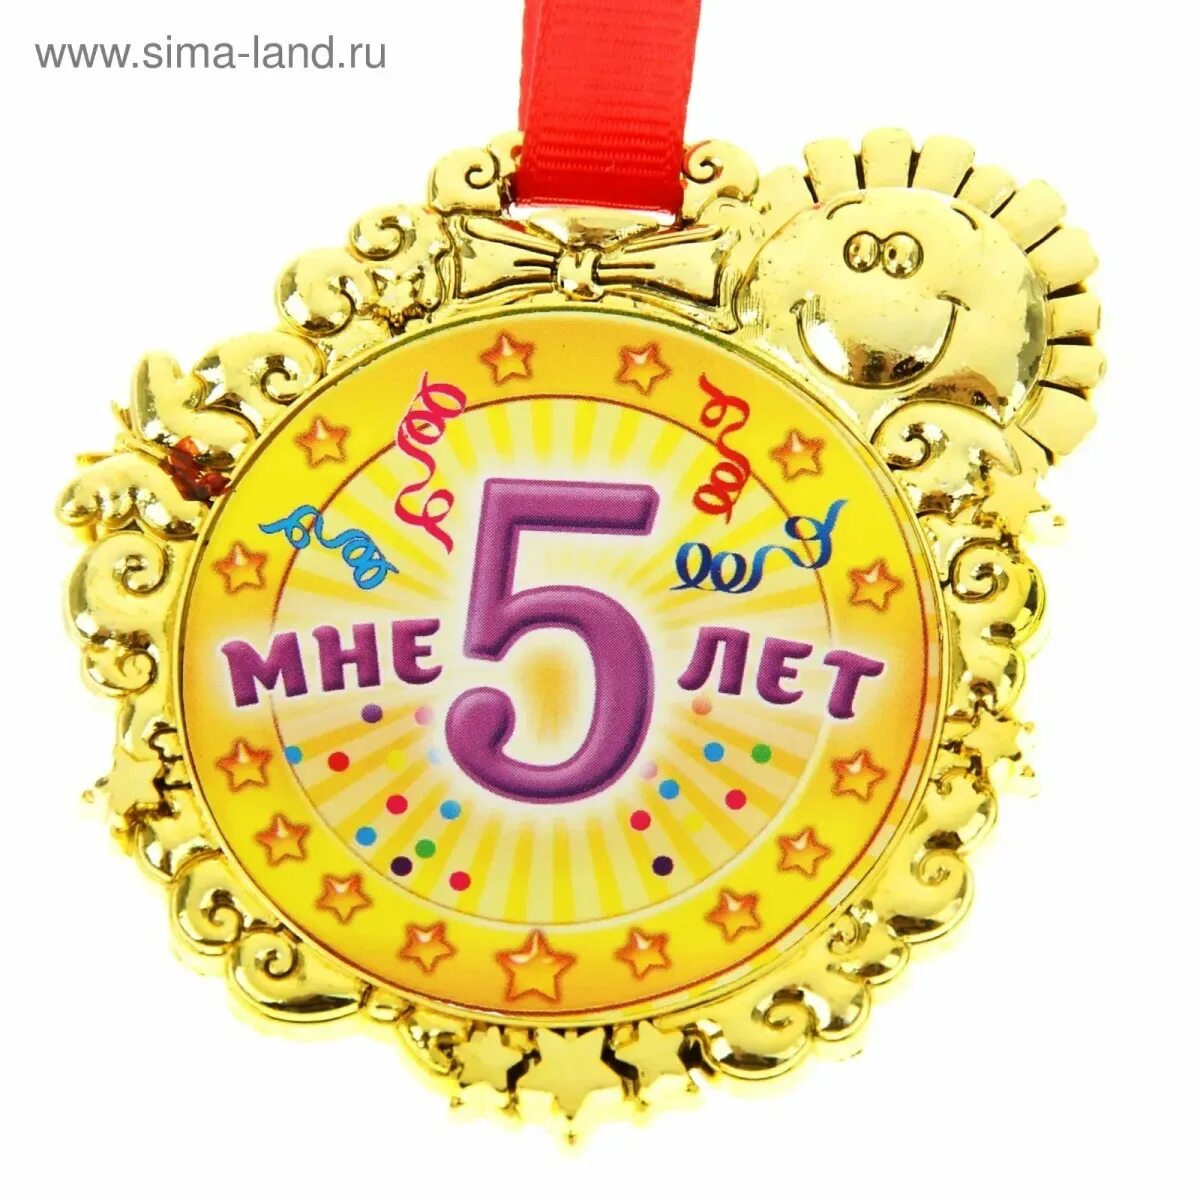 День рождения рождения 5 лет стишок. Медаль 5 лет. Медаль *с днем рождения*. Медаль с юбилеем. Медаль с днем рождения 5 лет.